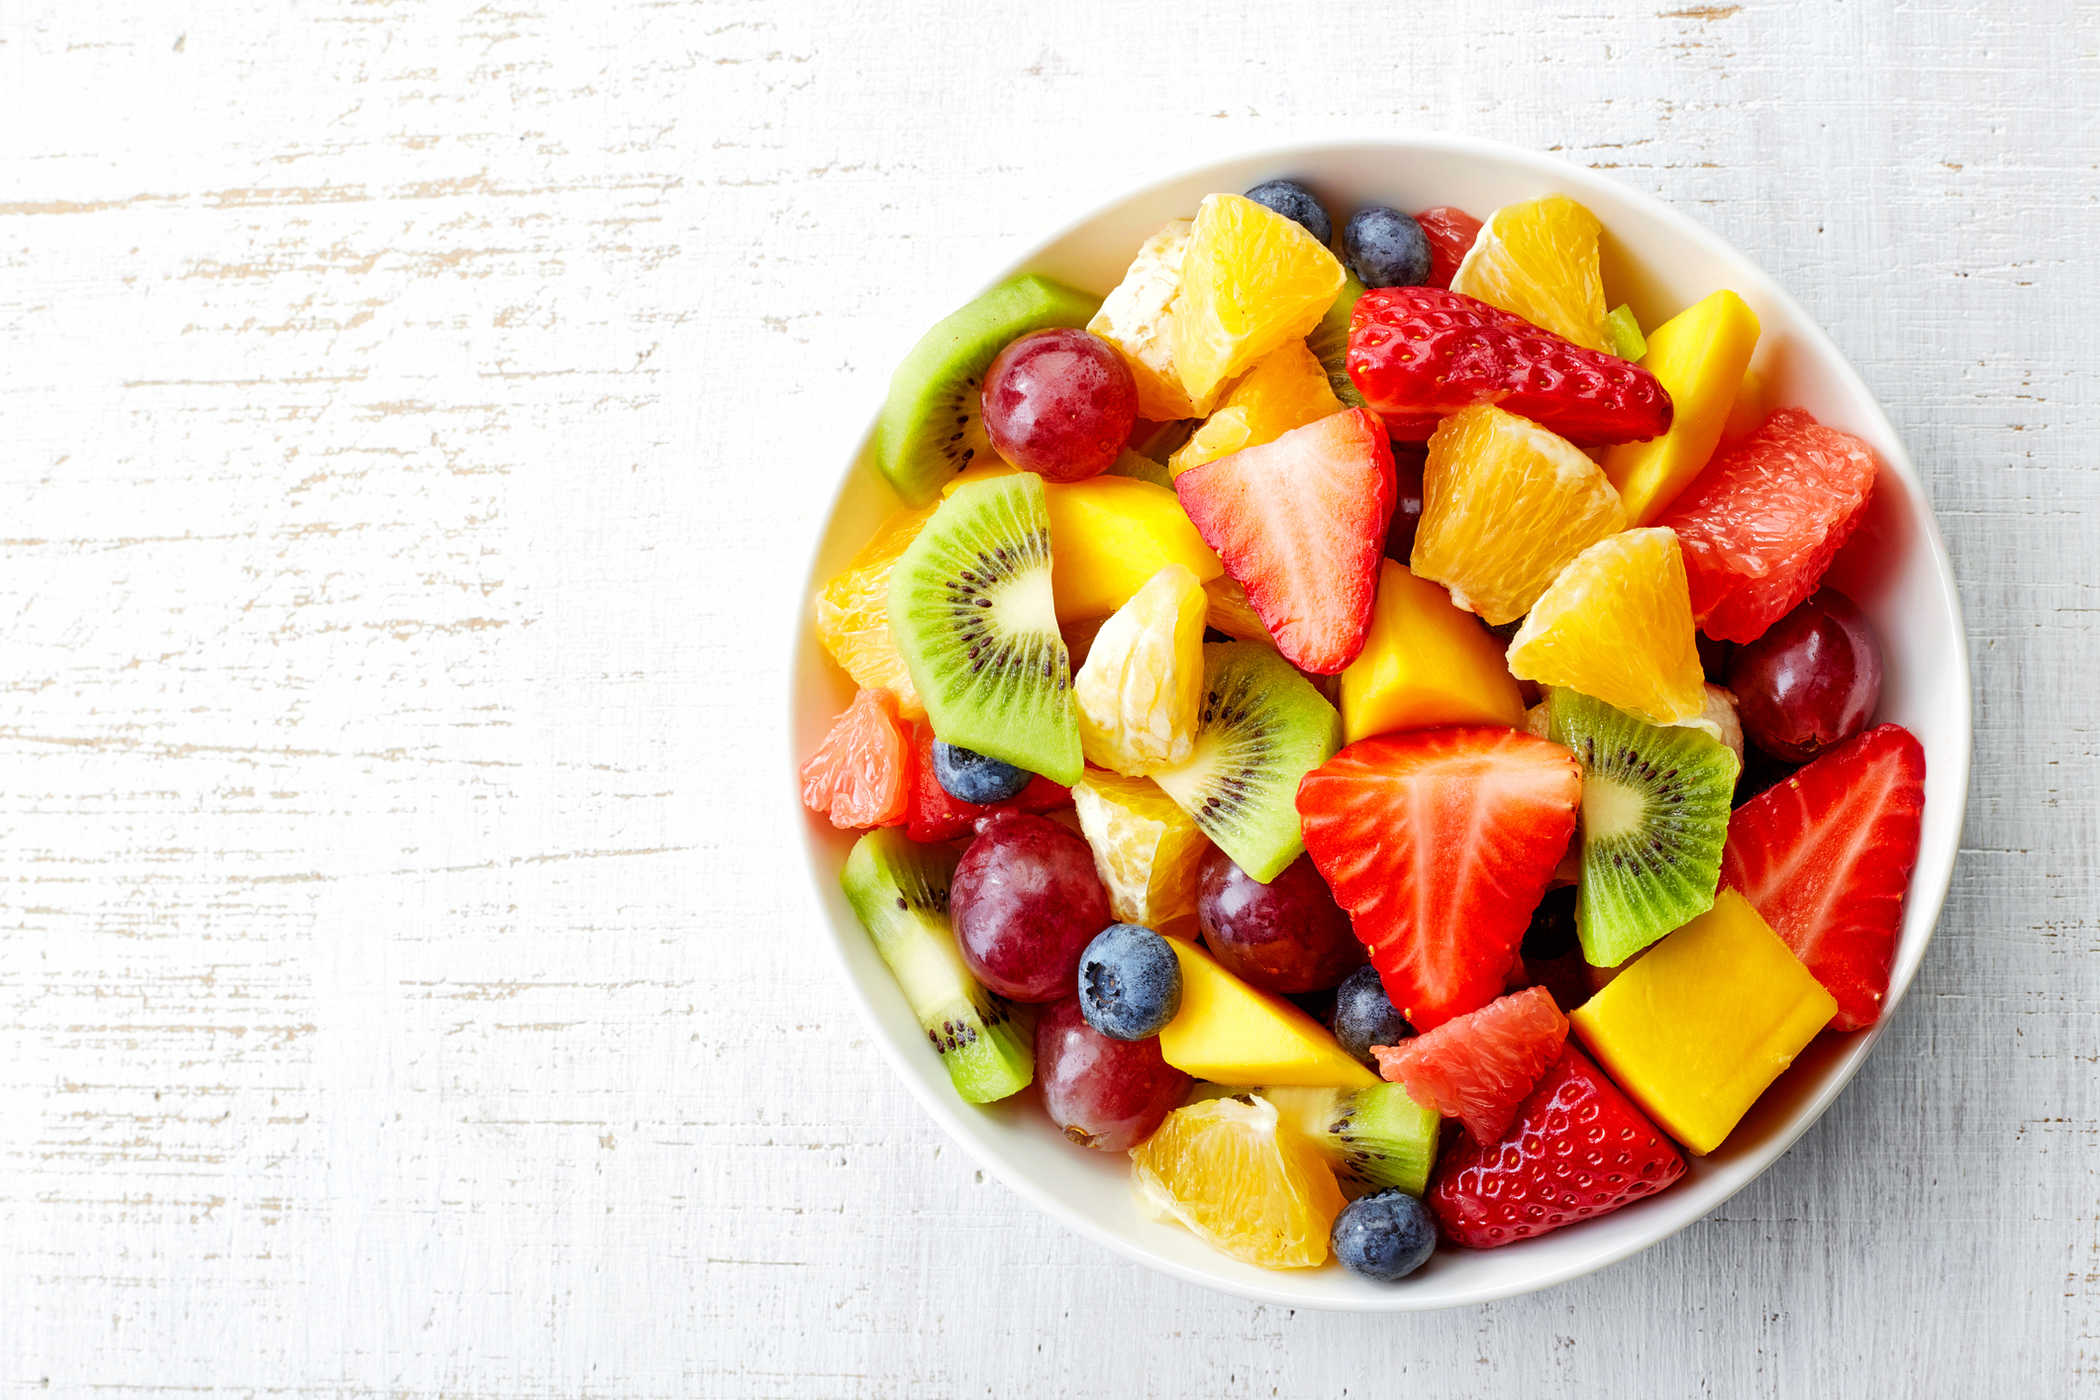 تناول الفاكهة الطازجة للحد من خطر مرض السكري